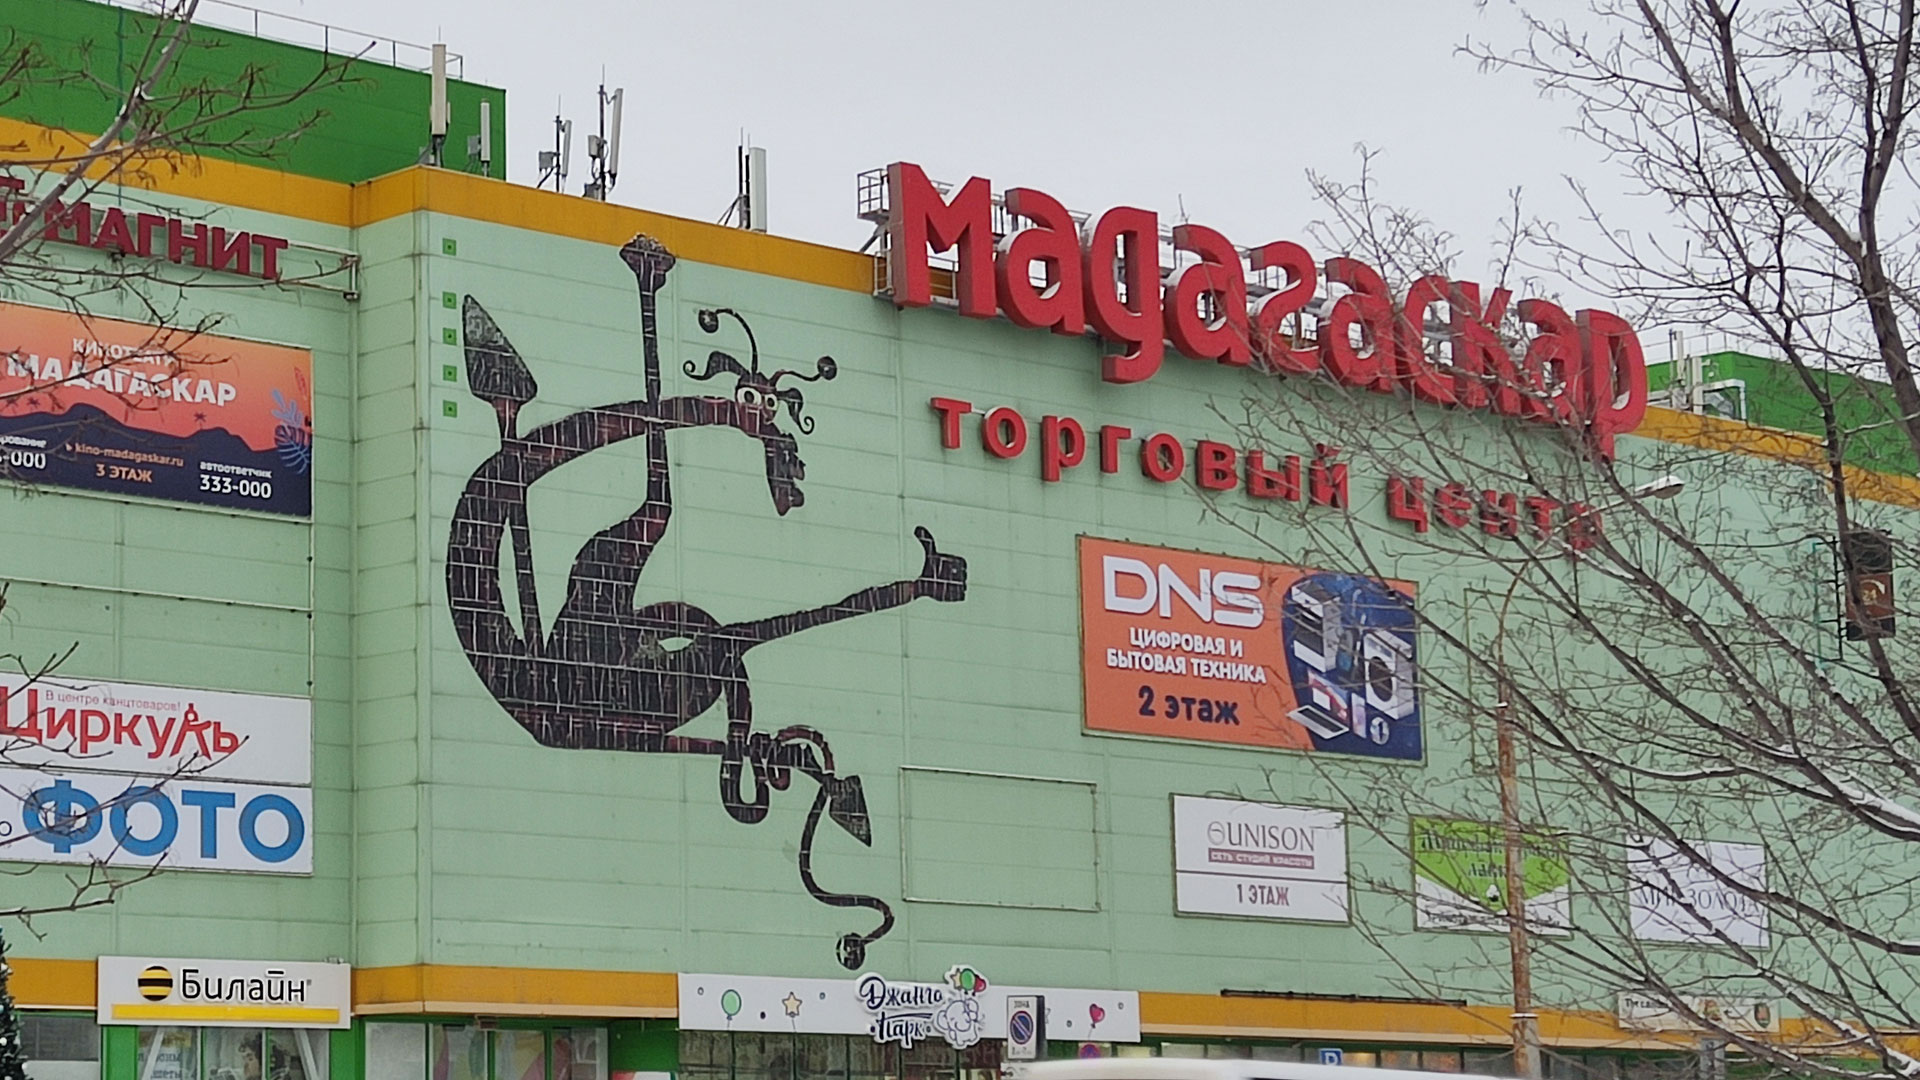 Вид на торгово-развлекательный центр Мадагаскар в городе Тольятти.